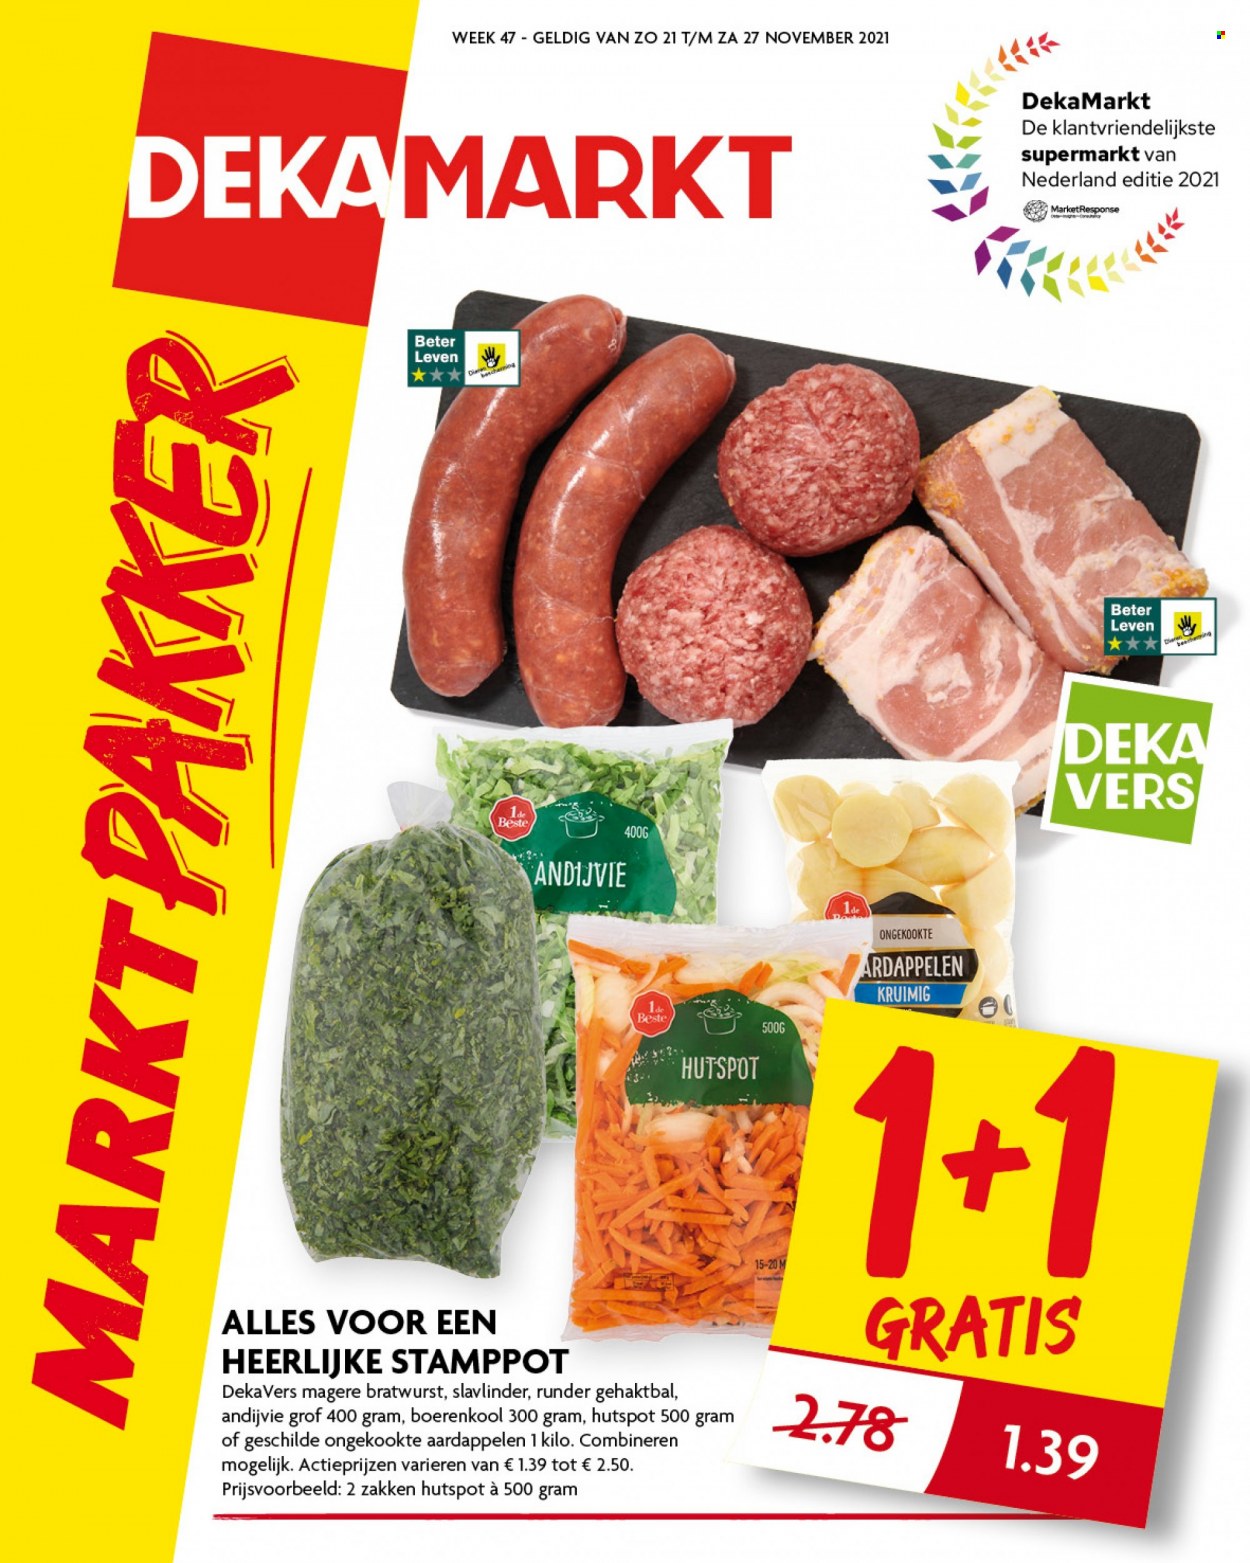 thumbnail - DekaMarkt-aanbieding - 21-11-2021 - 27-11-2021 -  producten in de aanbieding - aardappelen, boerenkool, andijvie. Pagina 1.